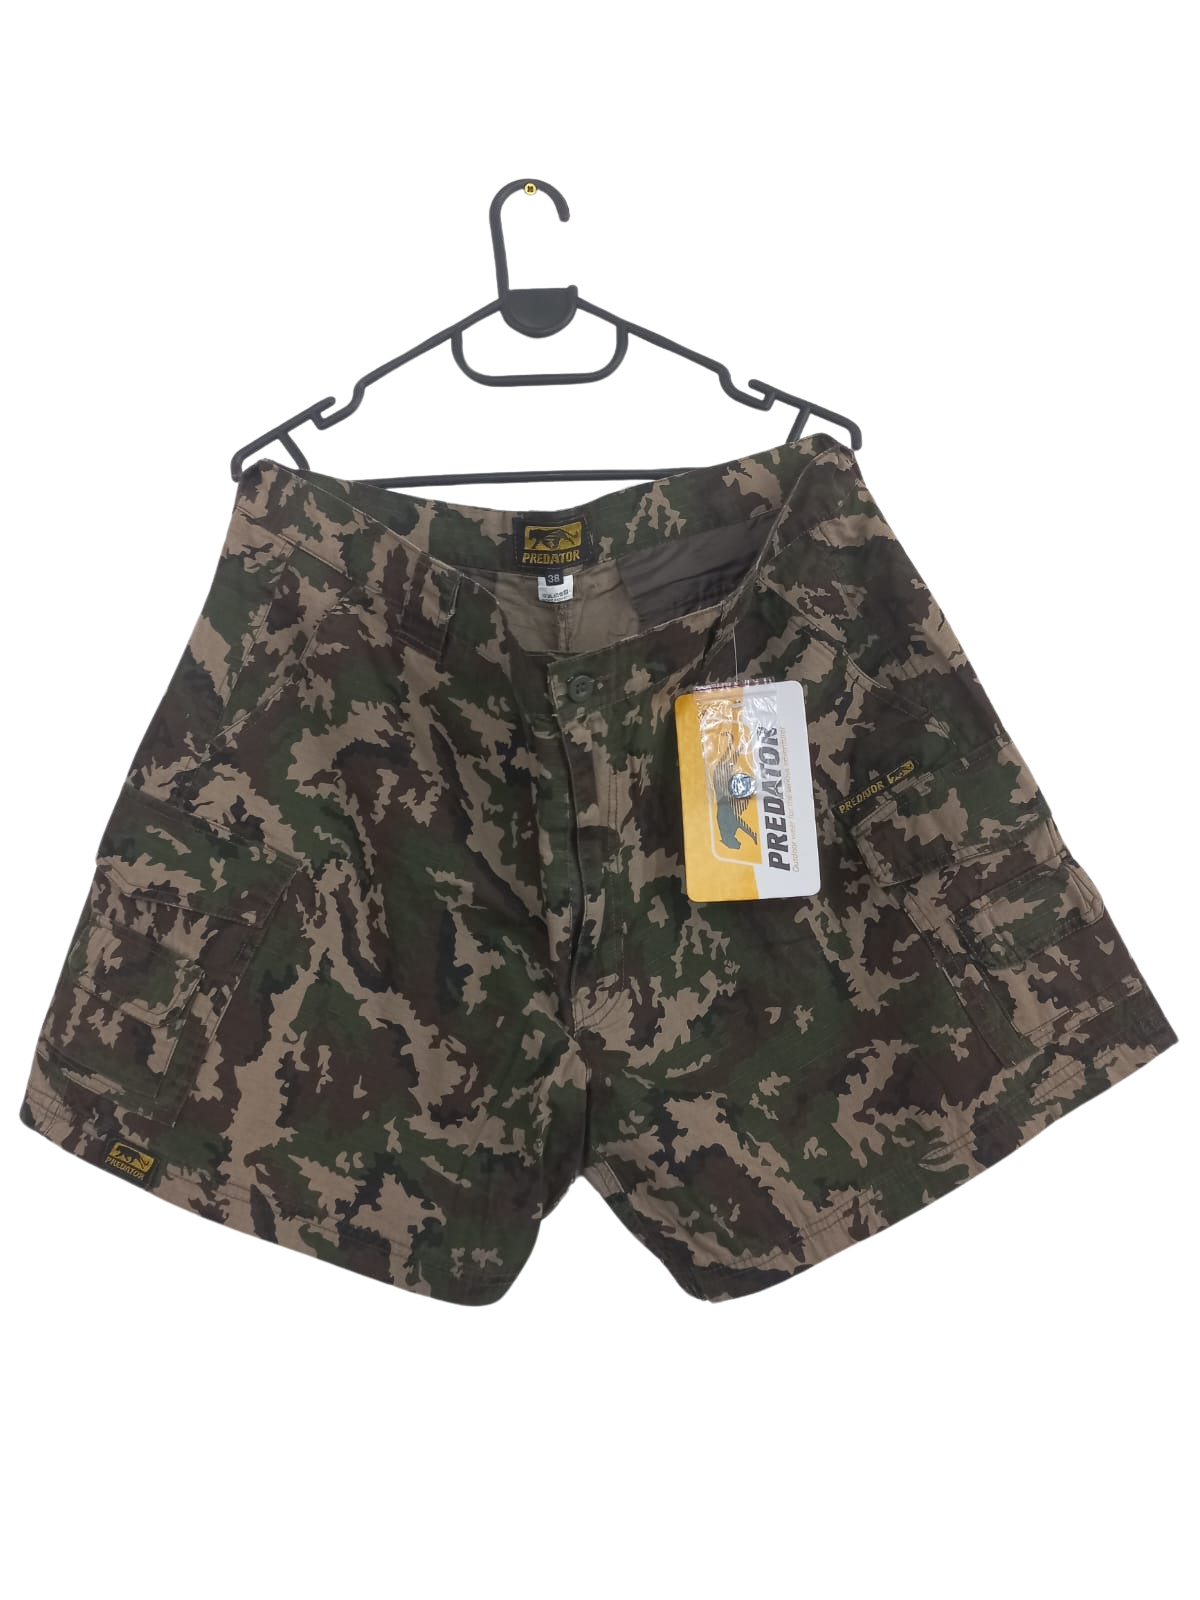 Unisex Camo Short Pants for Outdoor Adventures